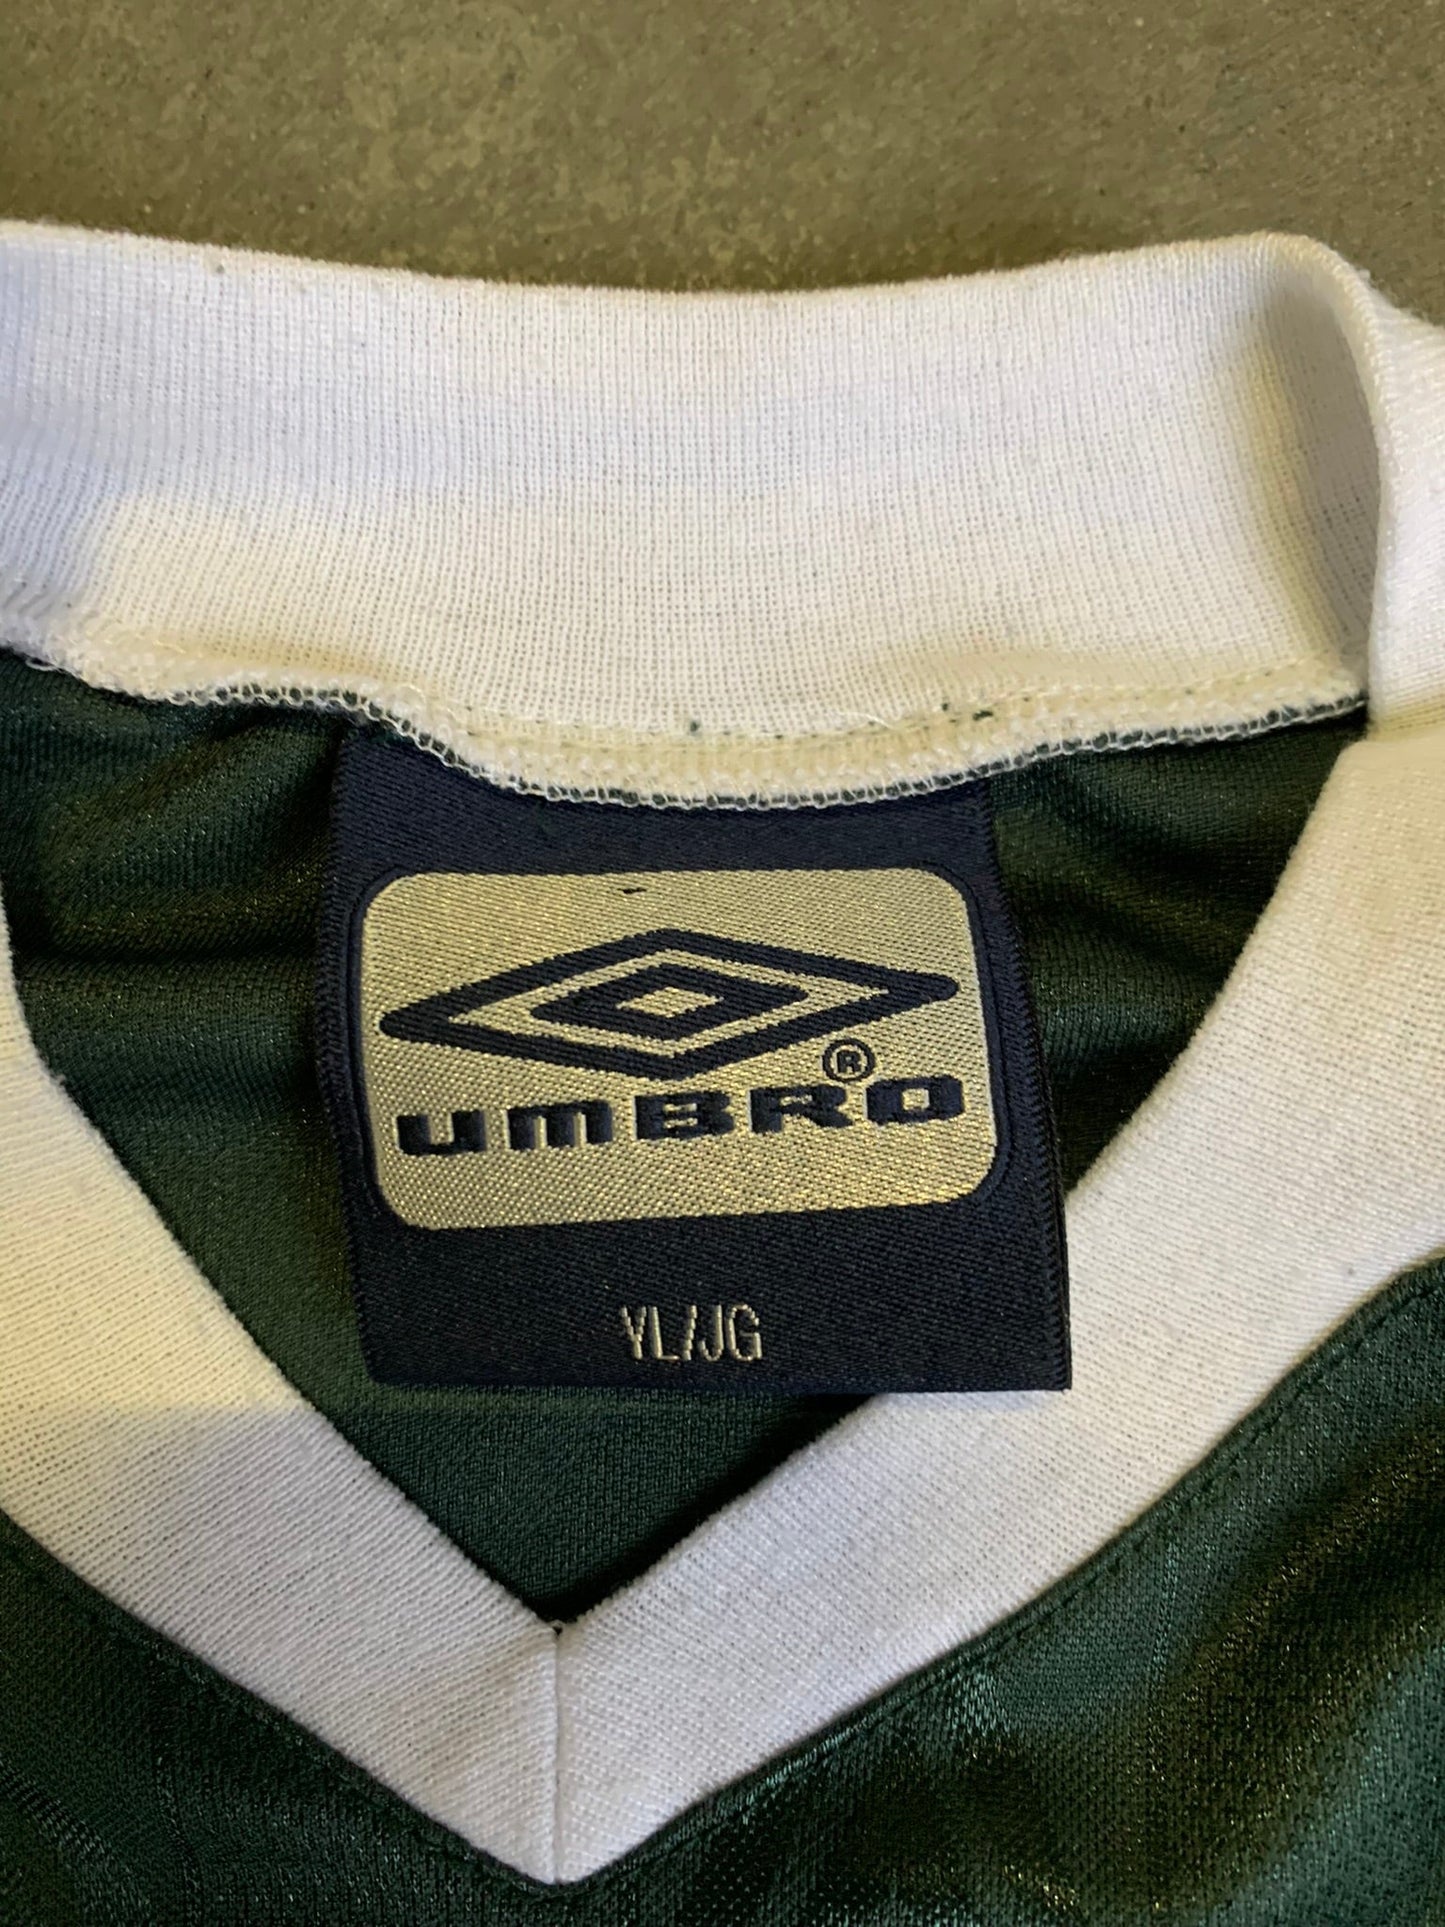 (XS) Umbro Soccer Kit